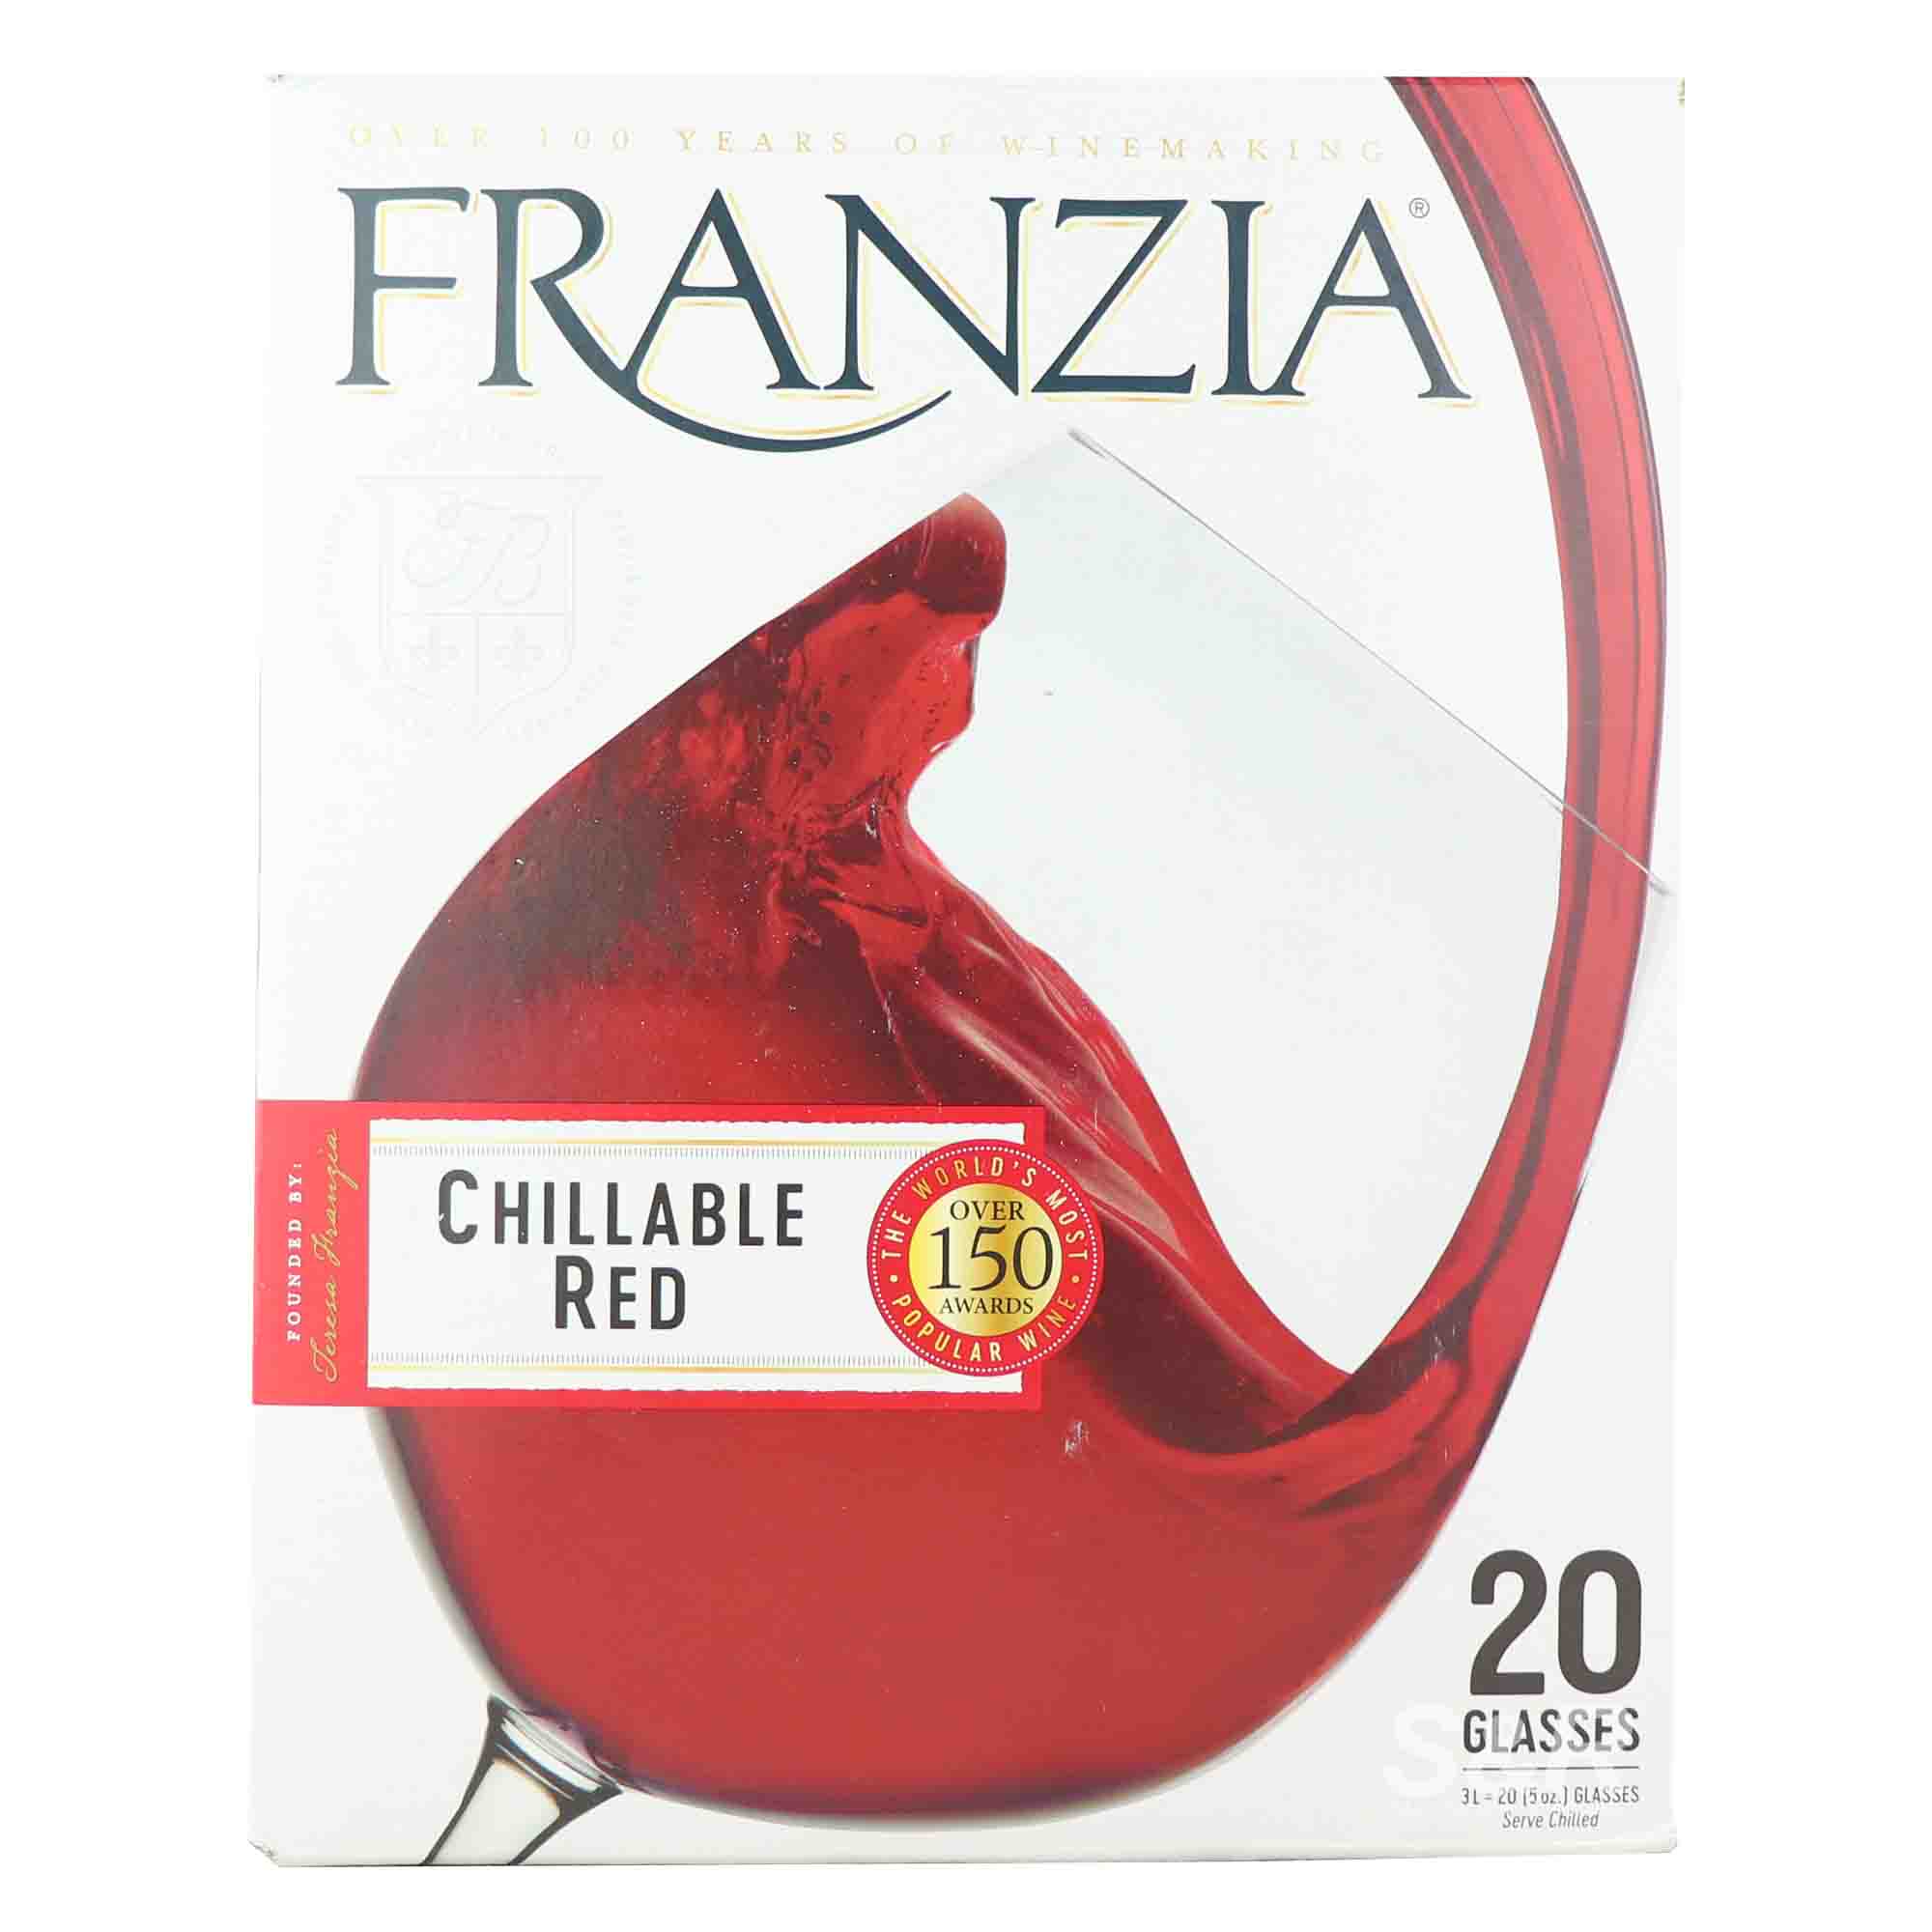 Franzia Chillable Red Wine 3L